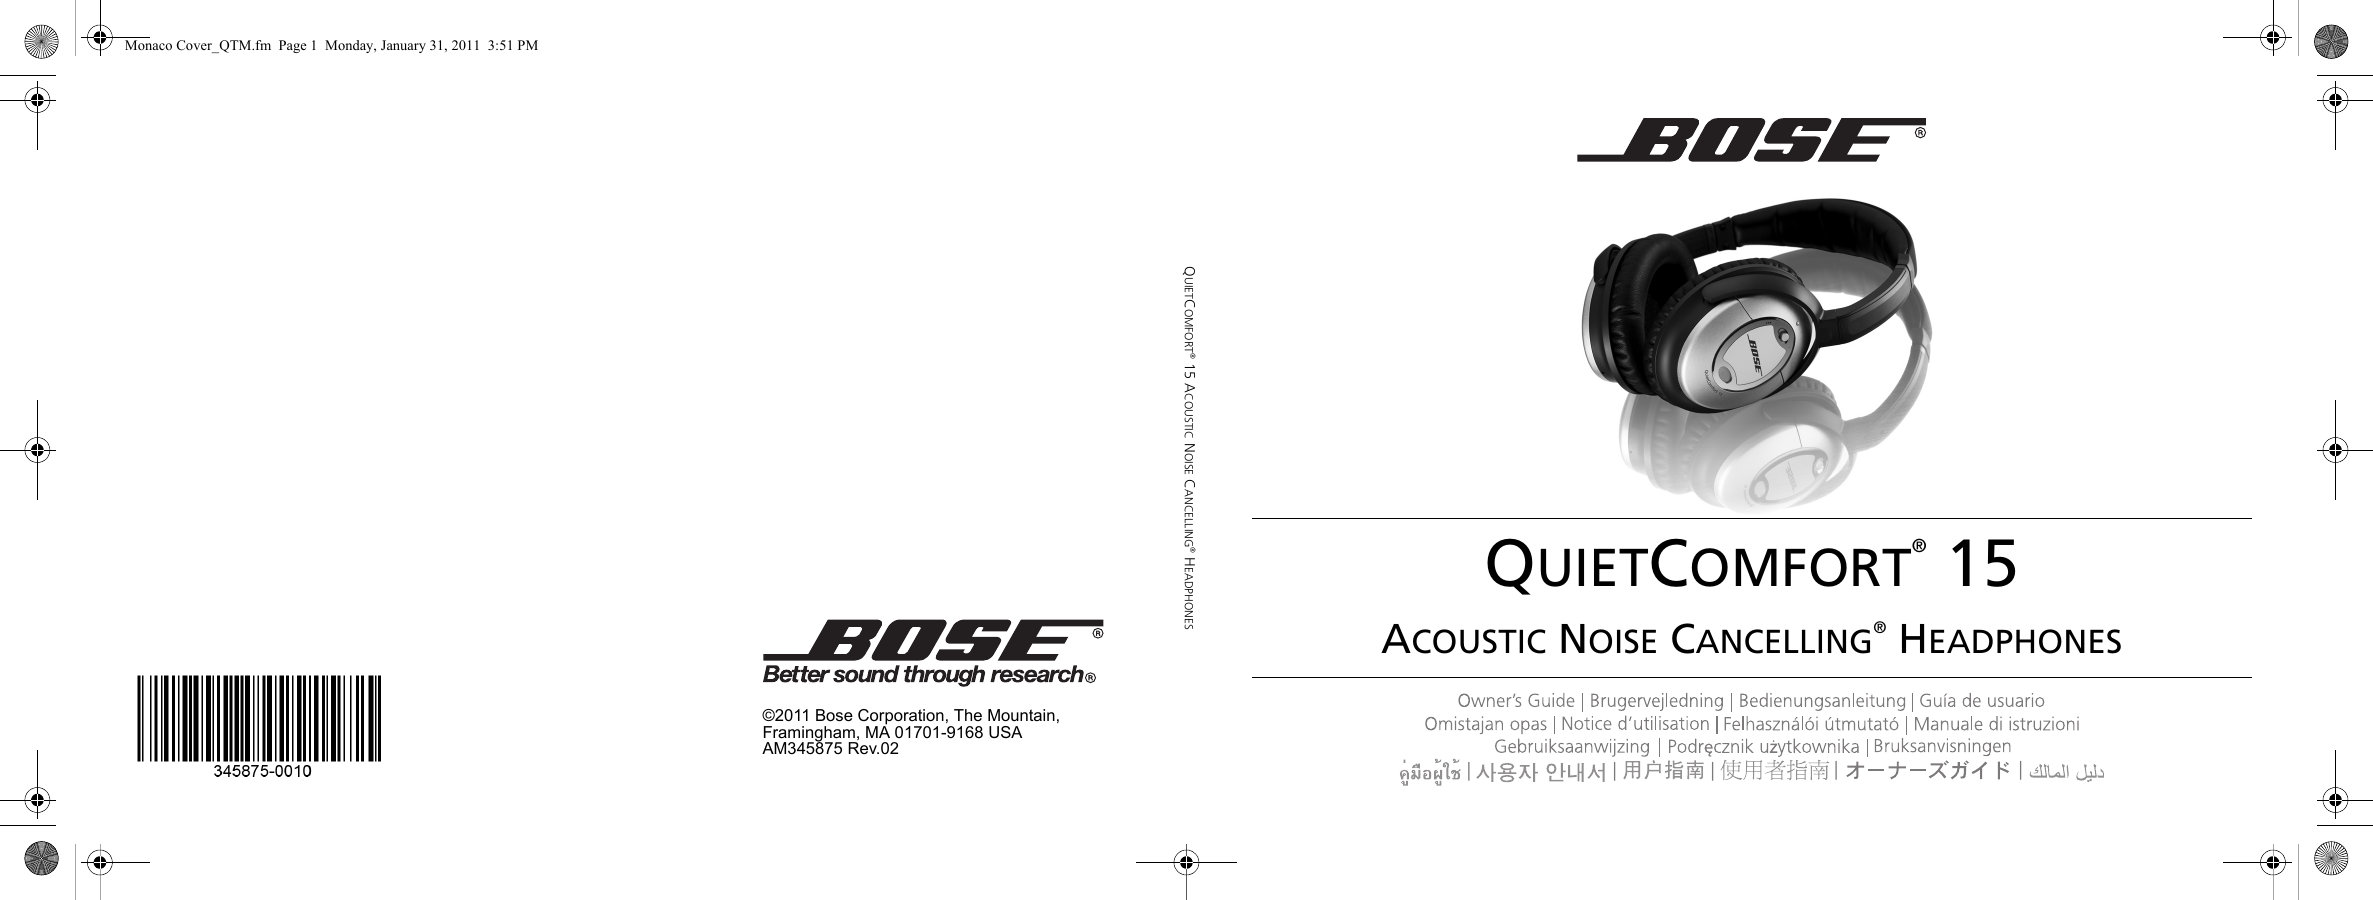 Bose Quietcomfort 15 Users Manual Monaco Cover_QTM